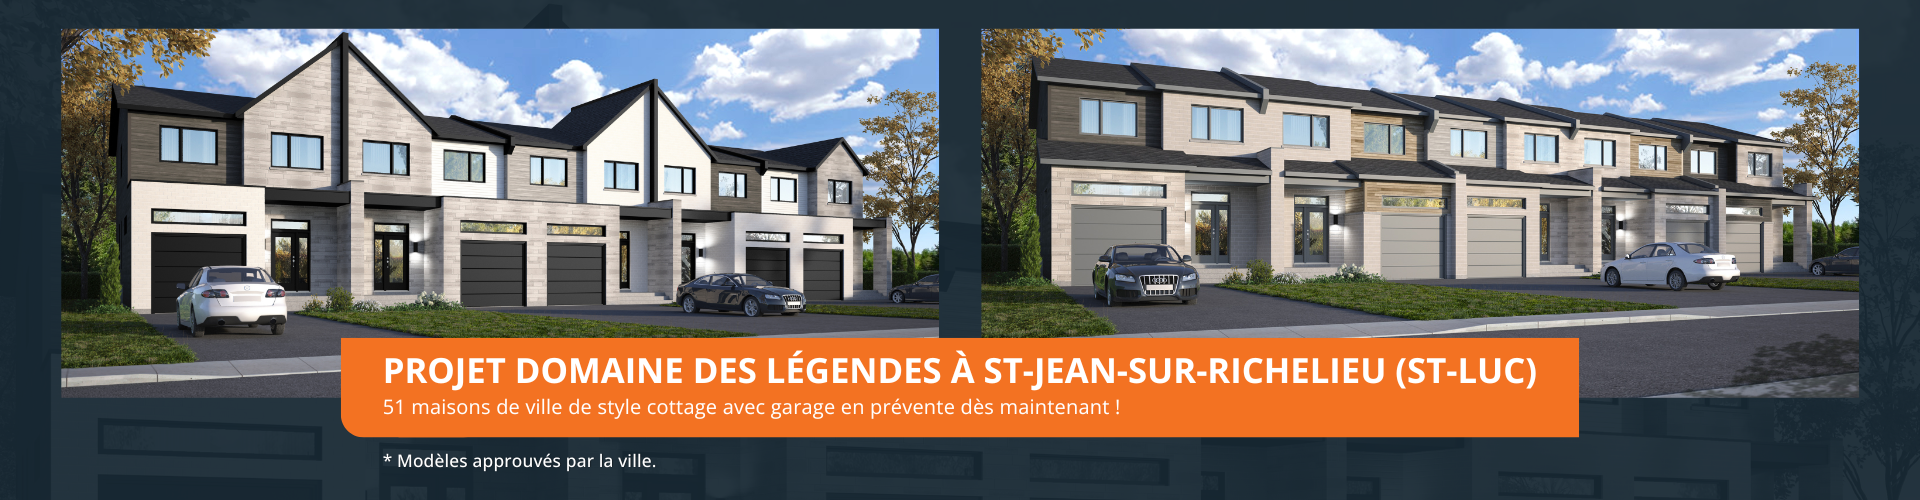 Habitations Iso Design projet Domaine des Légendes à St-Jean-sur-Richelieu